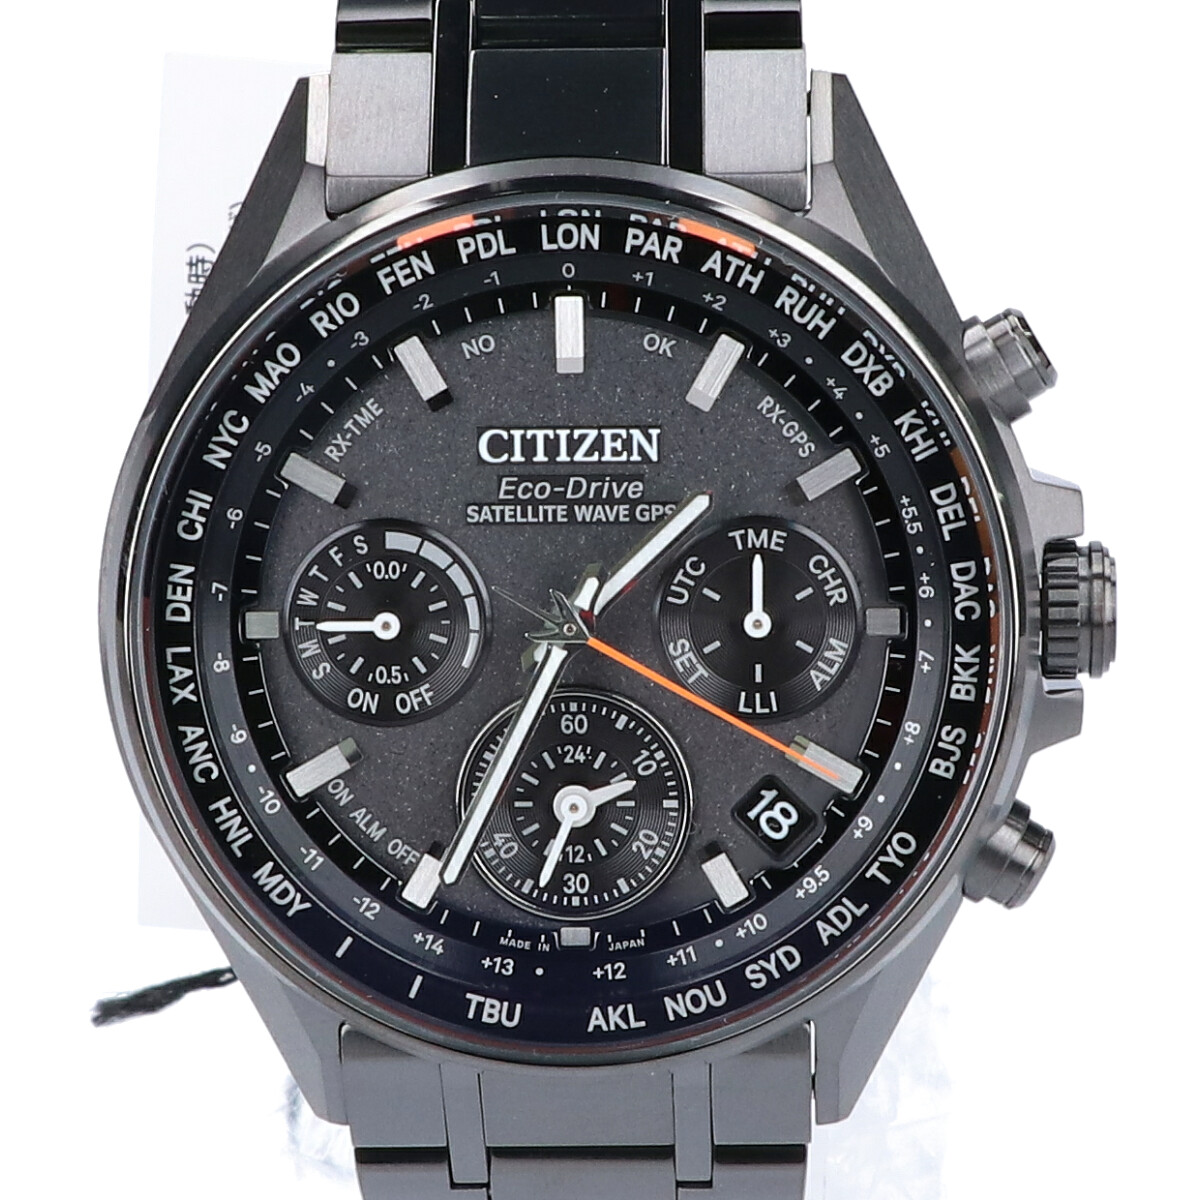 シチズンのCC4004-58E F950 スーパーチタニウム ダブルダイレクトフライト エコドライブ 腕時計の買取実績です。